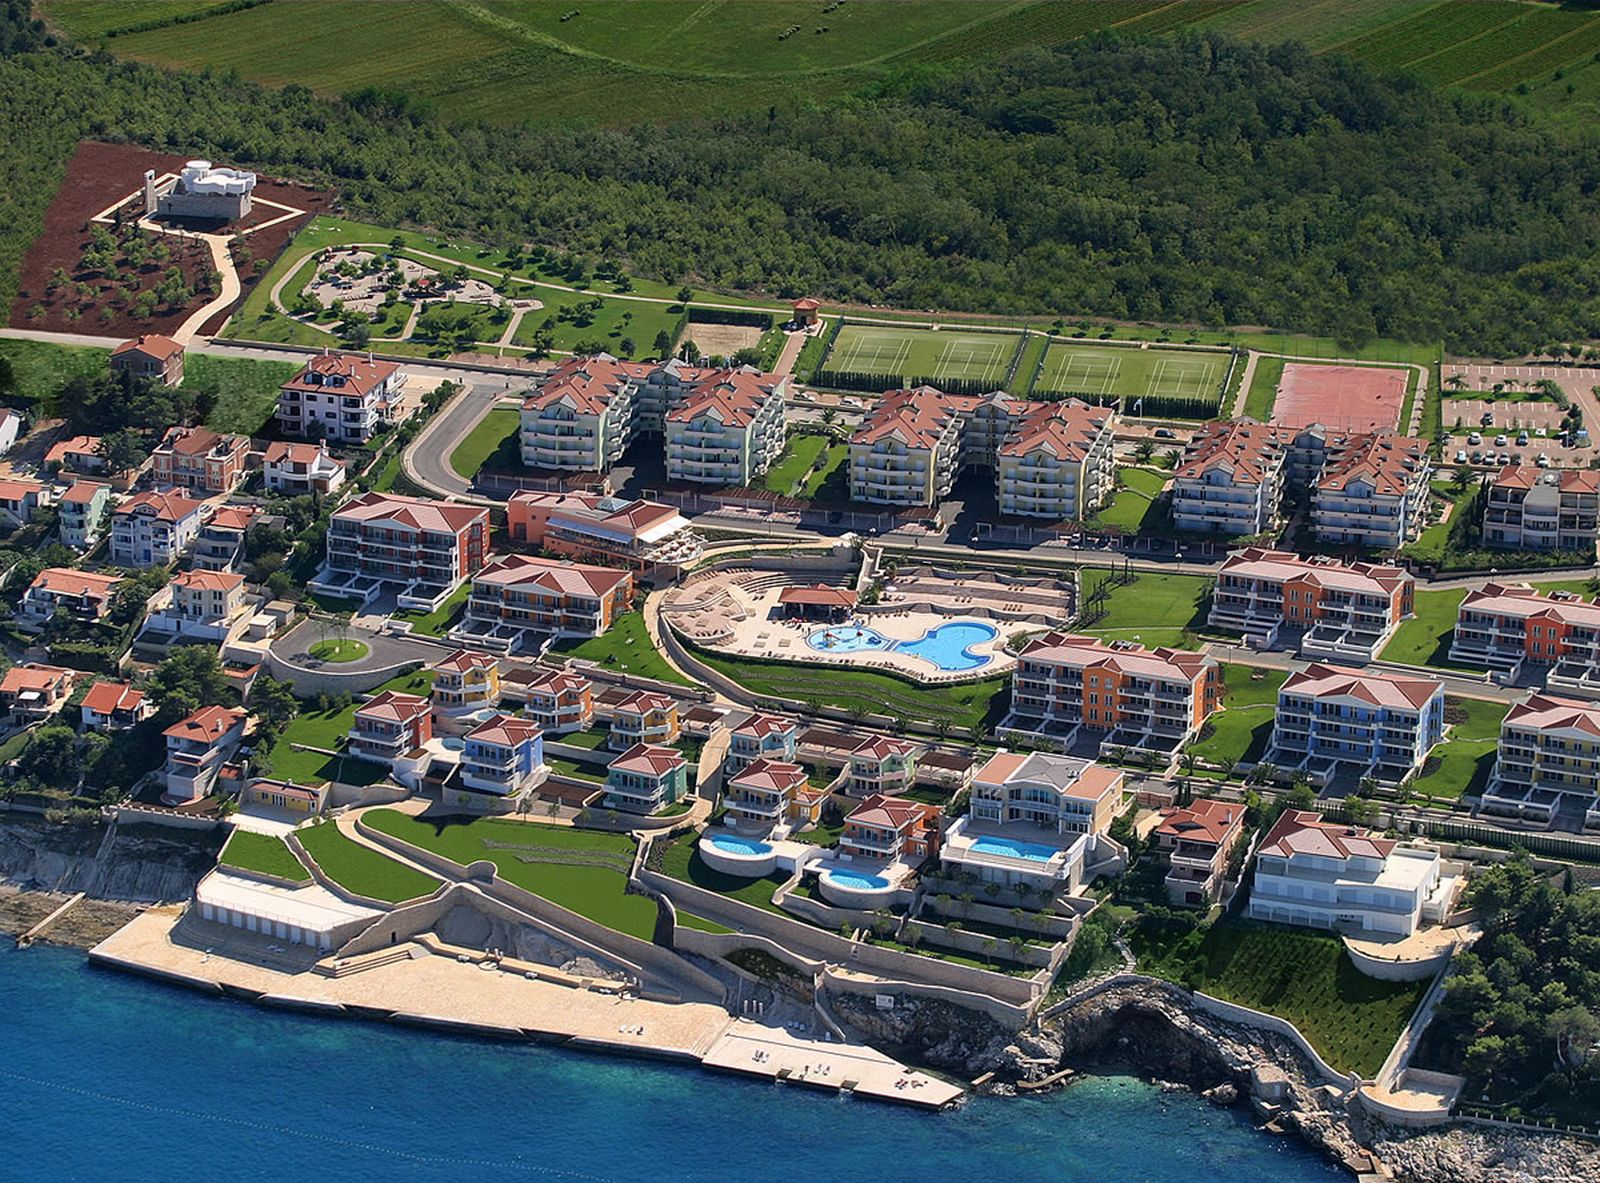 Operativni dubinski snimak i procjena vrijednosti imovine Skiper Resorta Savudrija, Hrvatska